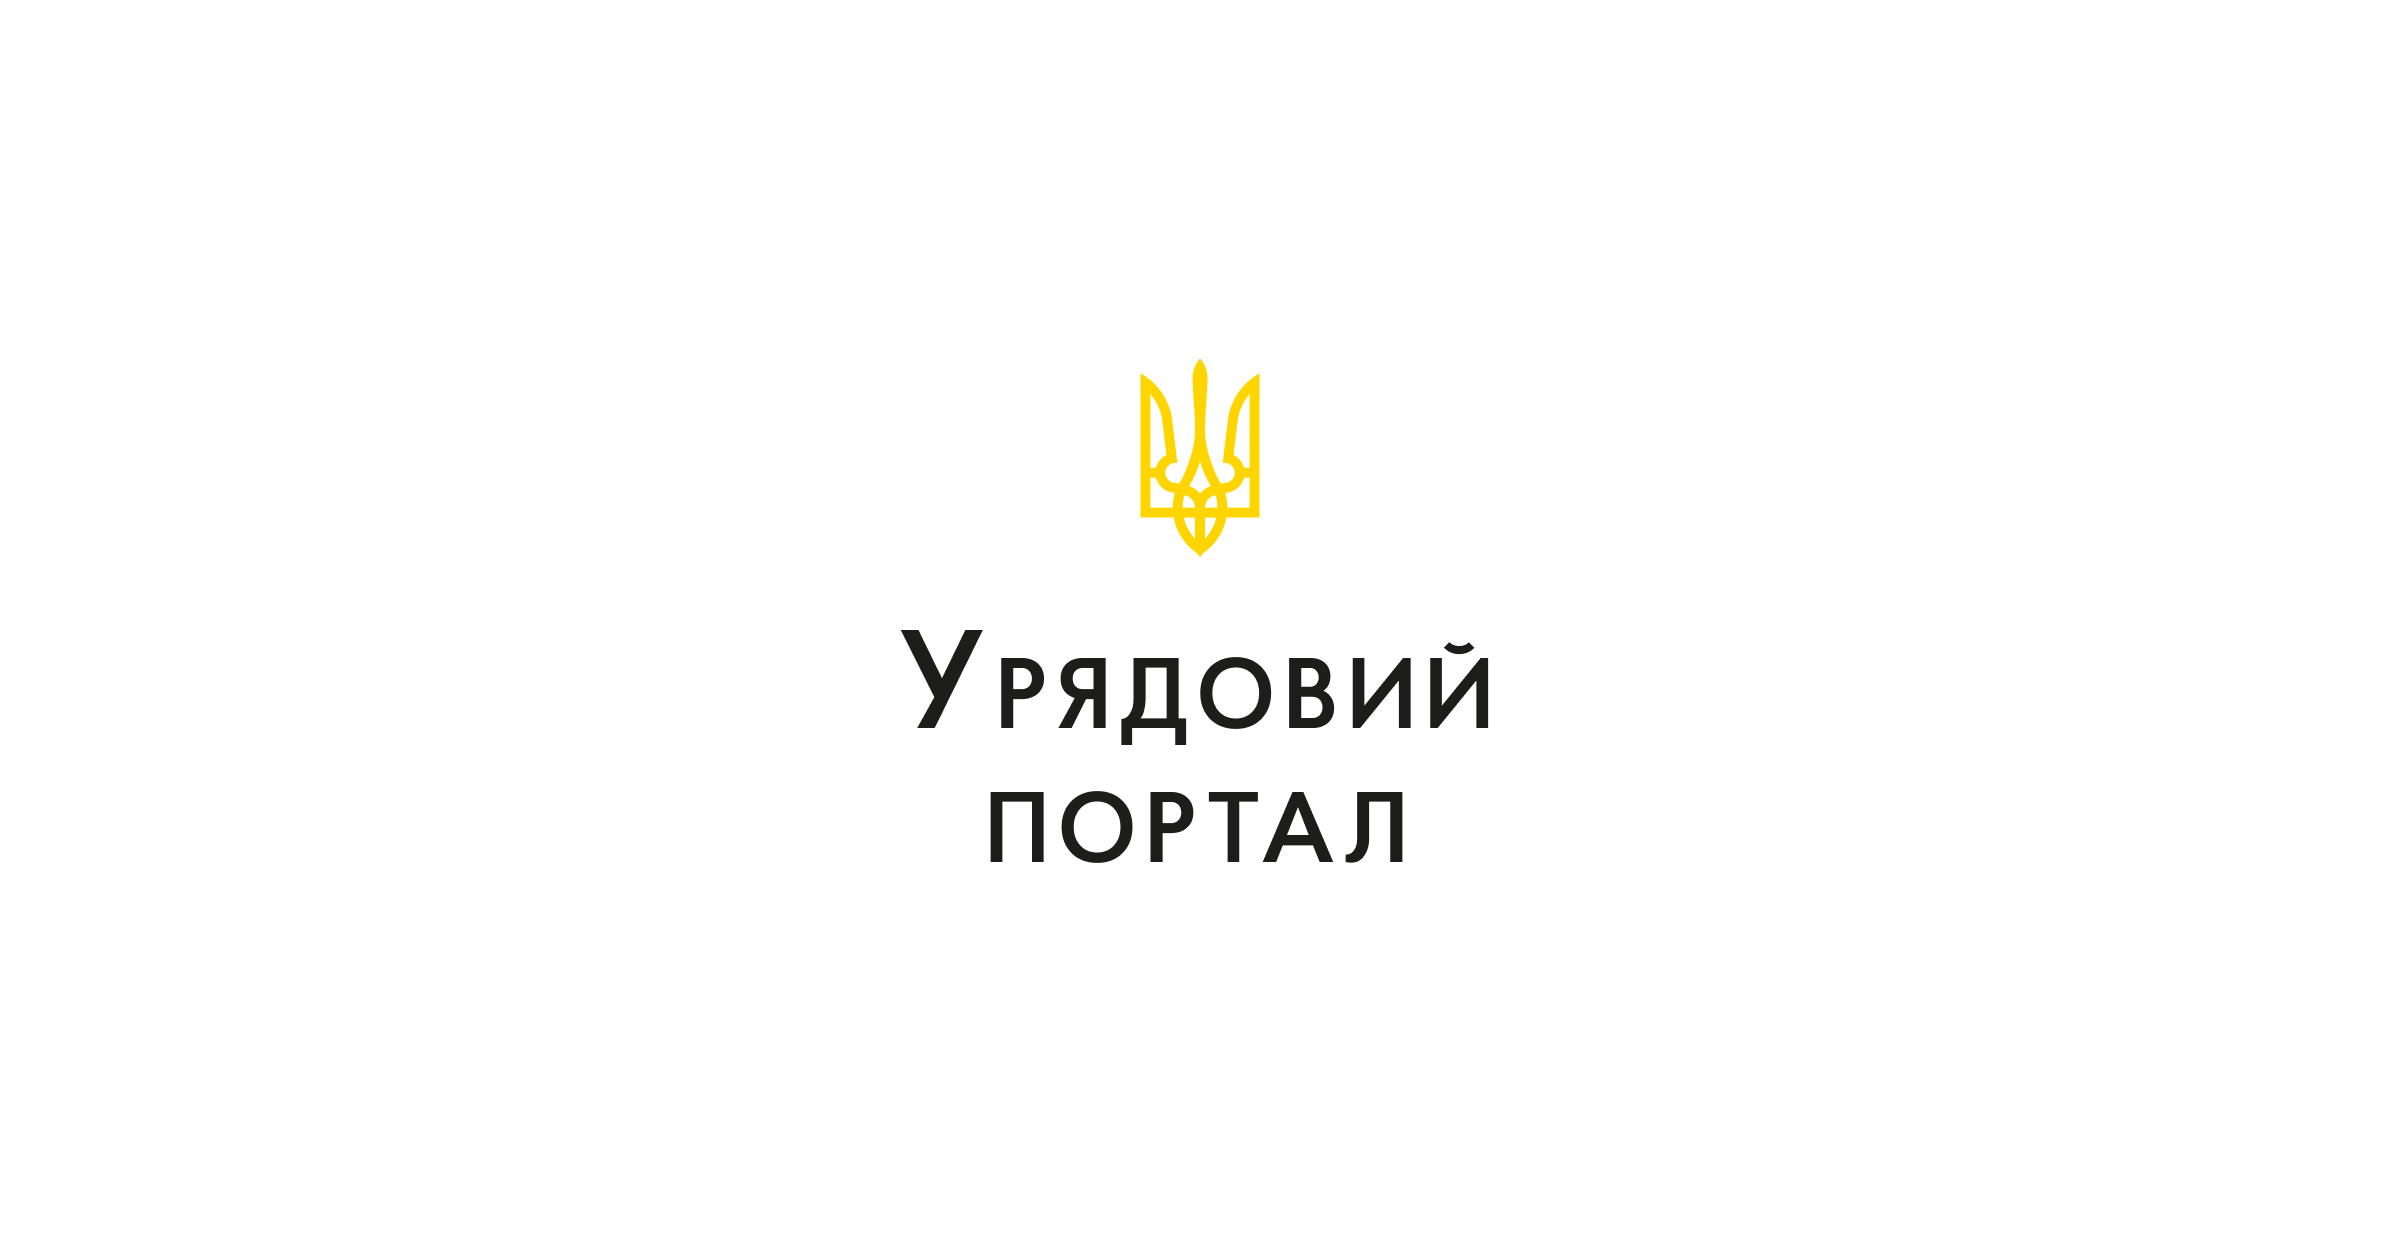 乌克兰政府门户网 Government portal 介绍乌克兰内阁部长，总理，政府历史，国家象征，宪法，地区和城市等信息。